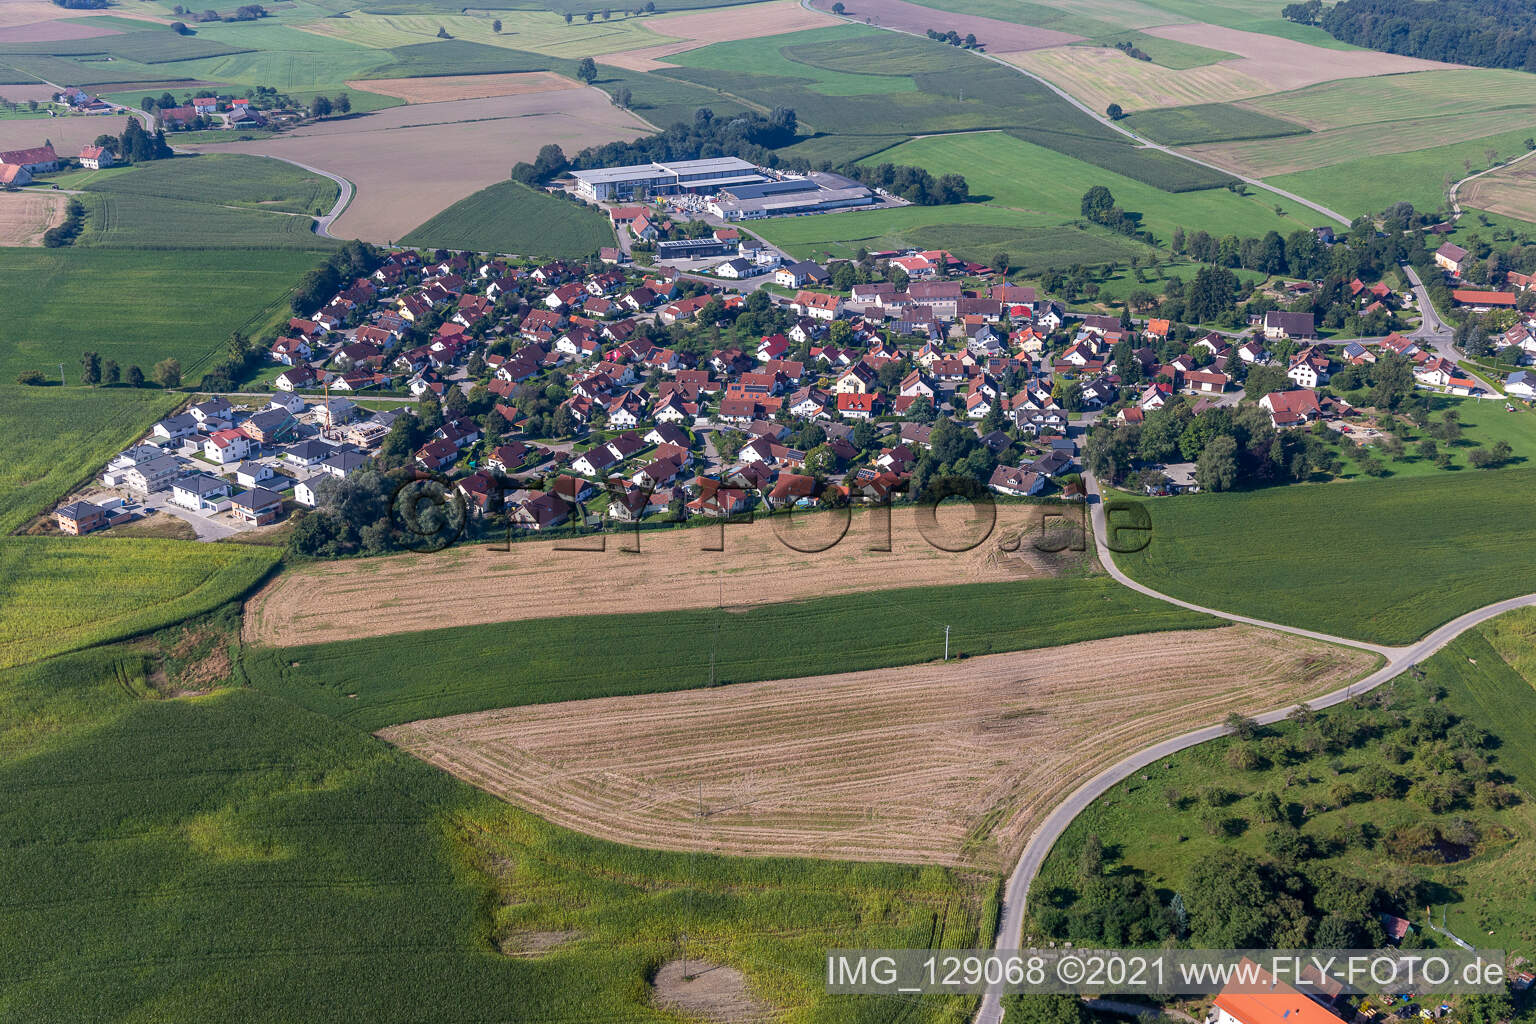 Vue aérienne de Quartier Zollenreute in Aulendorf dans le département Bade-Wurtemberg, Allemagne